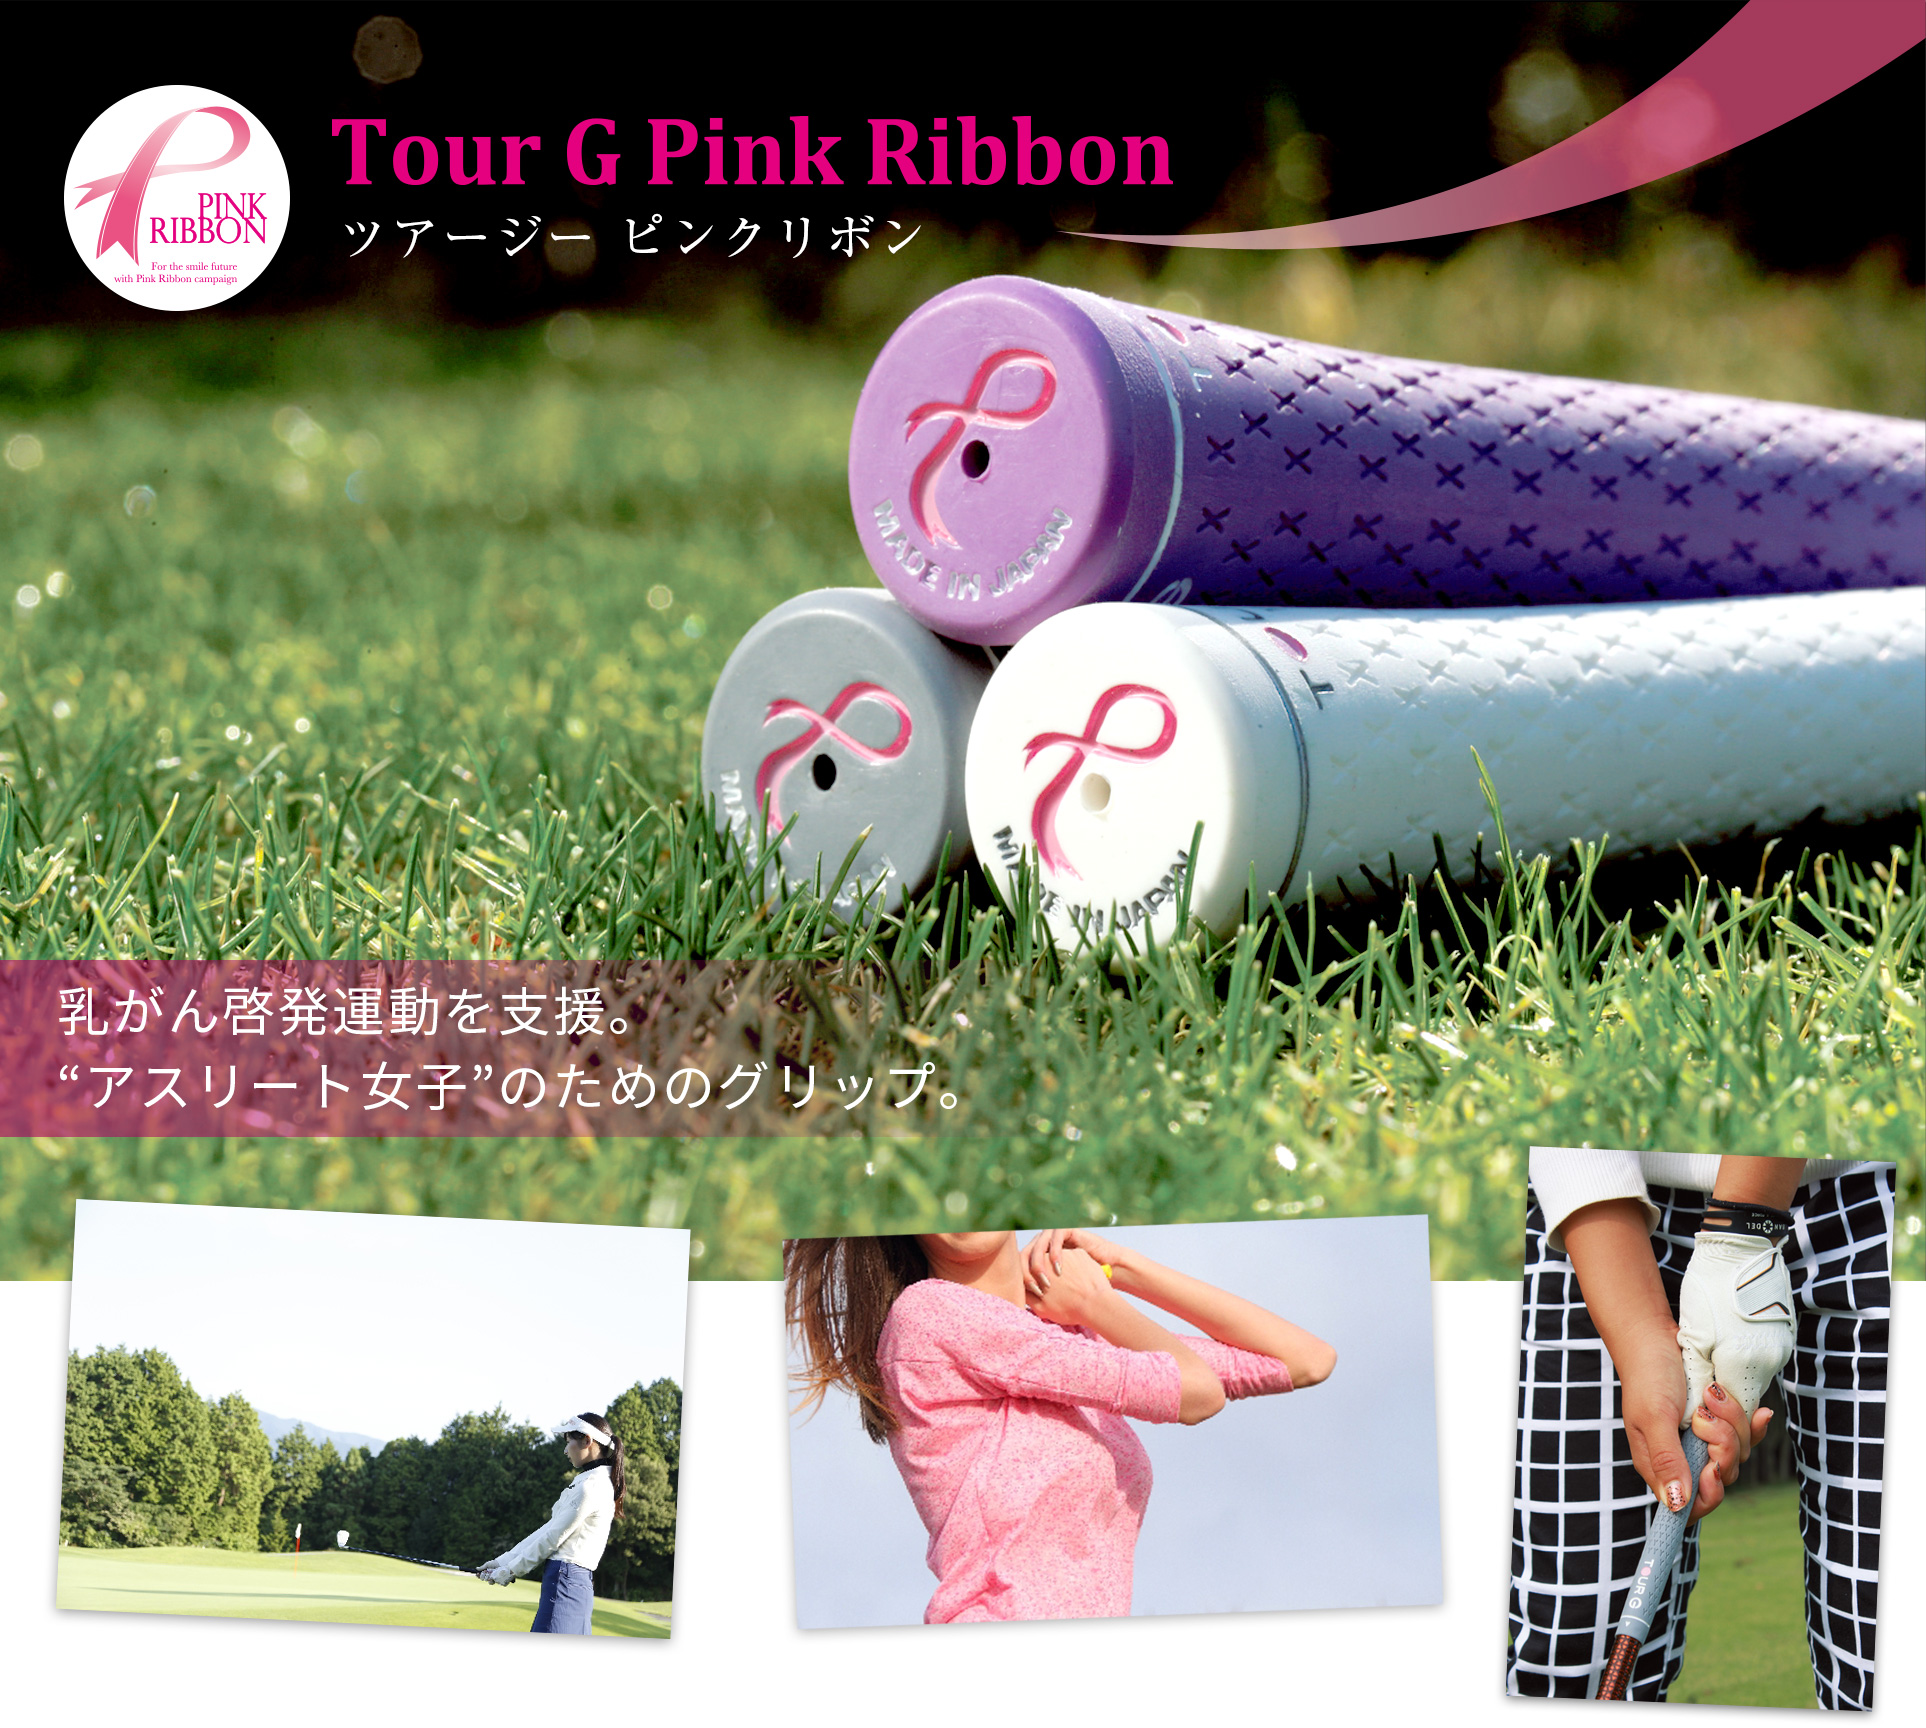 Tour G Pink Ribbon cA[W[sN{F[^xB gAX[gqĥ߂̃ObvB